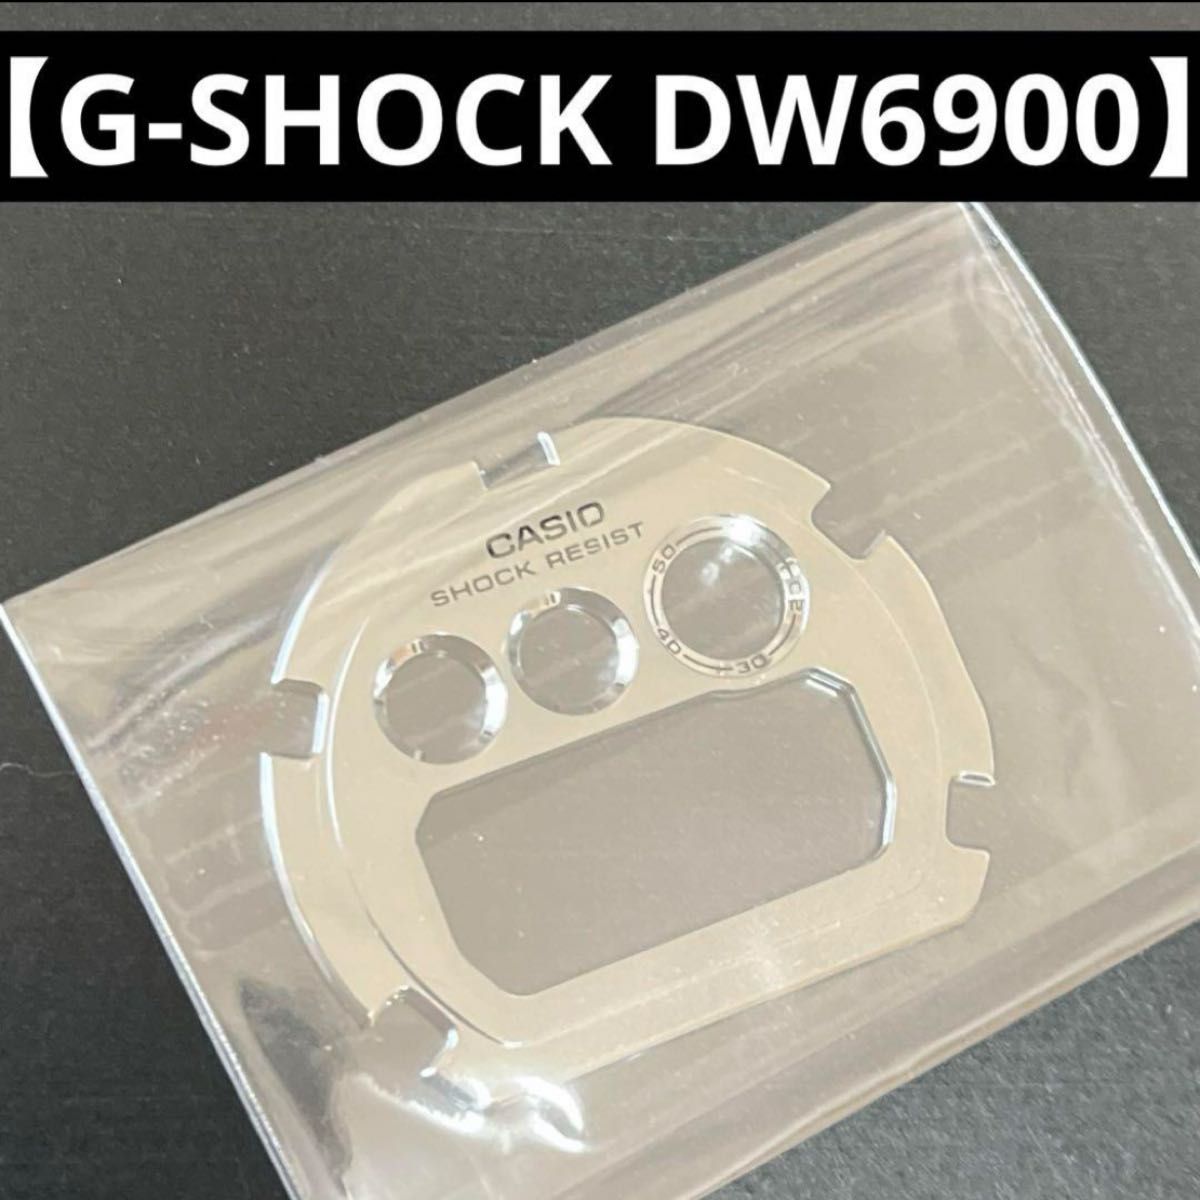 【新品】G-SHOCK DW6900 パネル シルバーメッキ パーツ デジタル腕時計